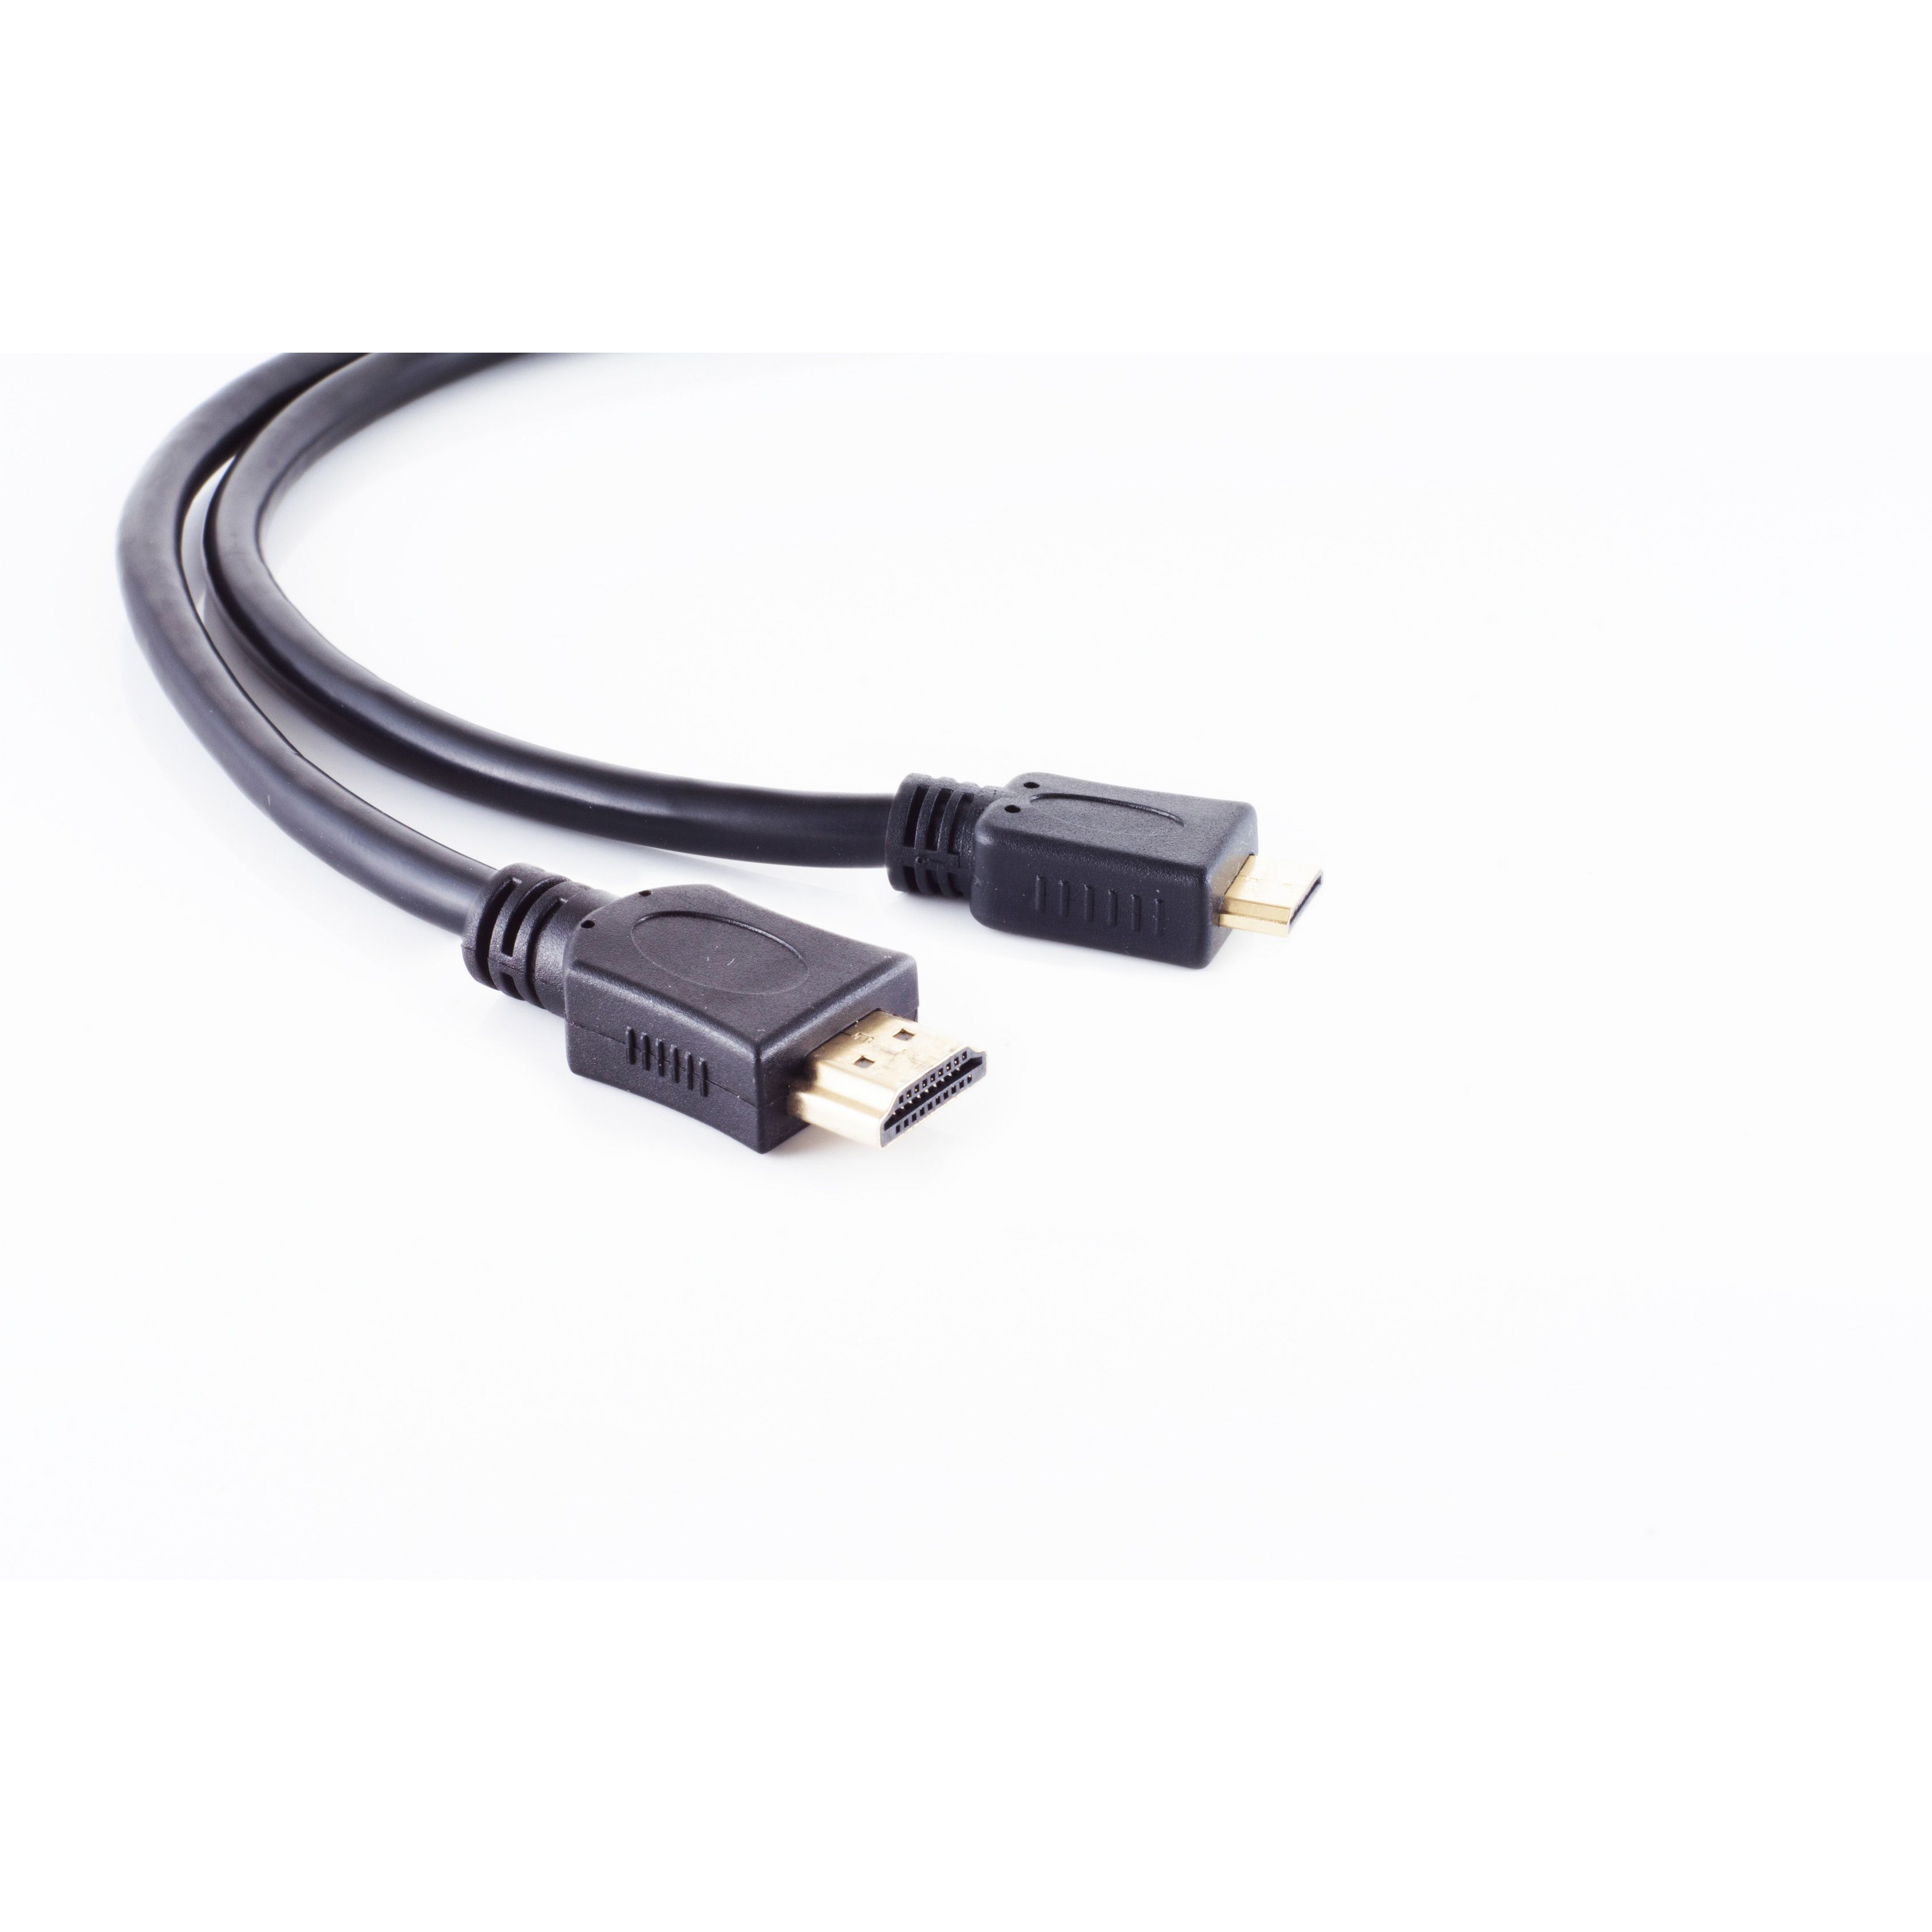 C-Stecker 3m / Kabel S/CONN HDMI MAXIMUM A-Stecker CONNECTIVITY HDMI verg. HDMI HEAC